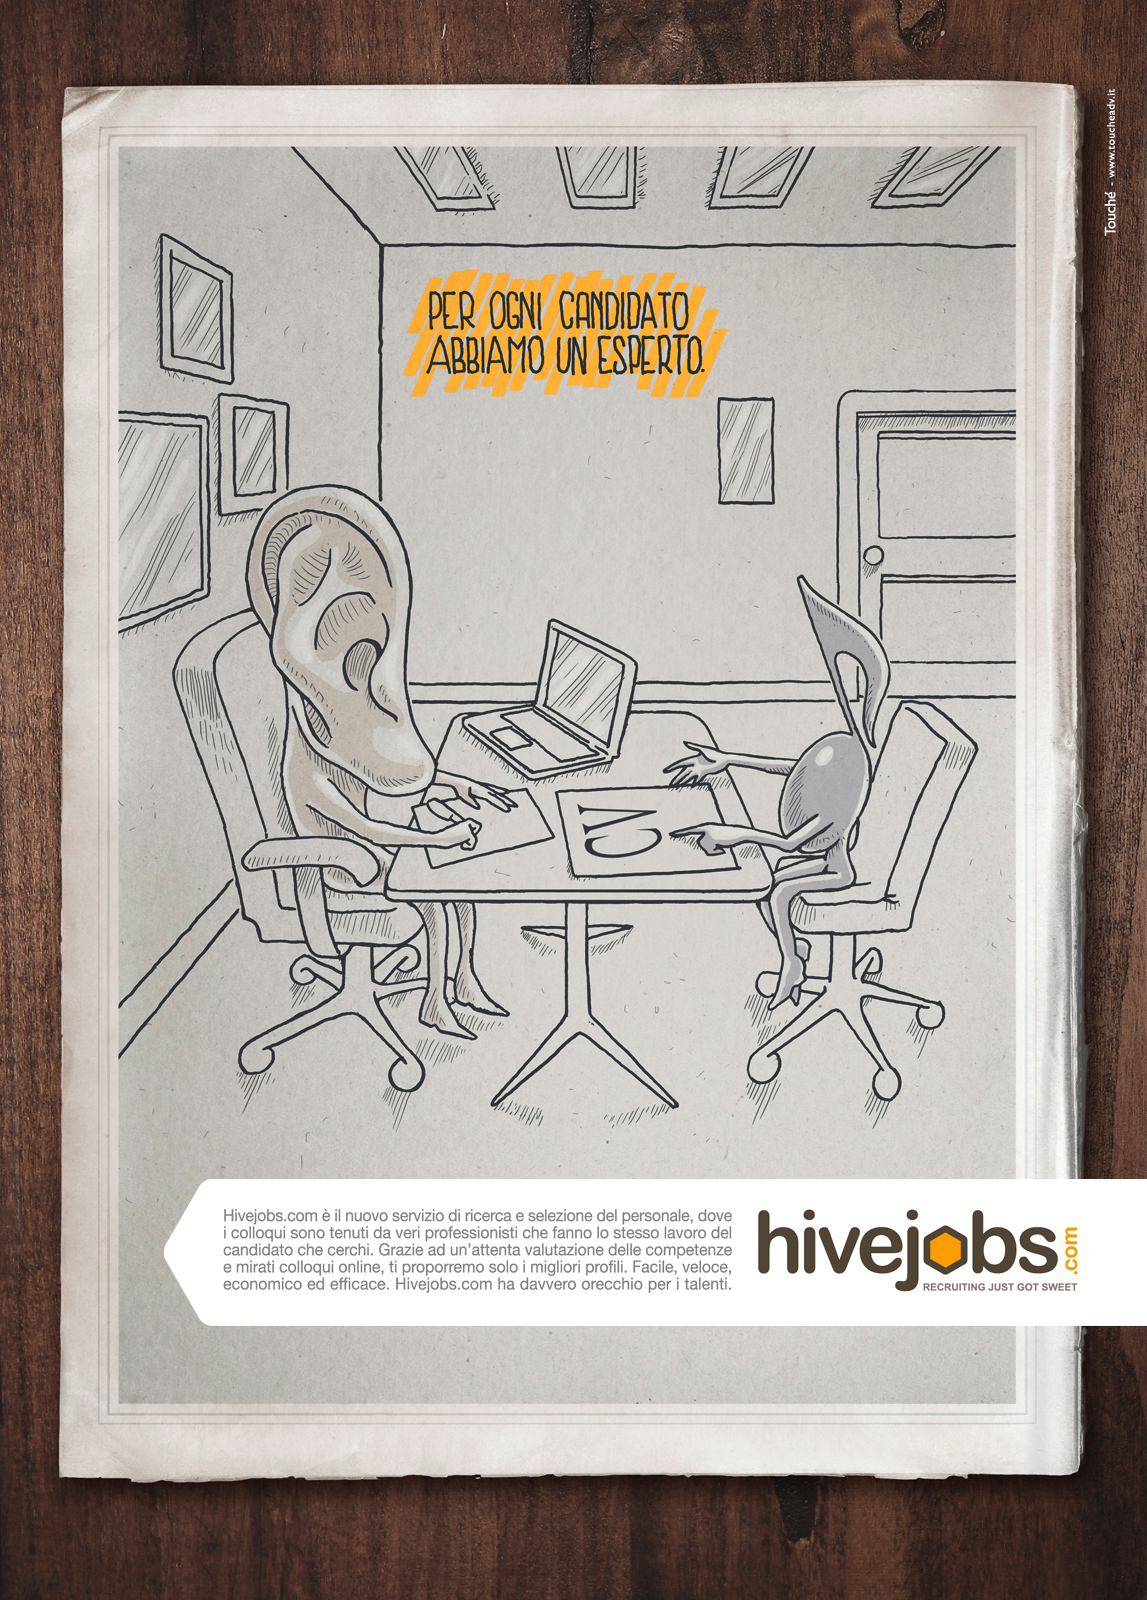 hivejobs.com  recruiting Jobs tongue ear nose